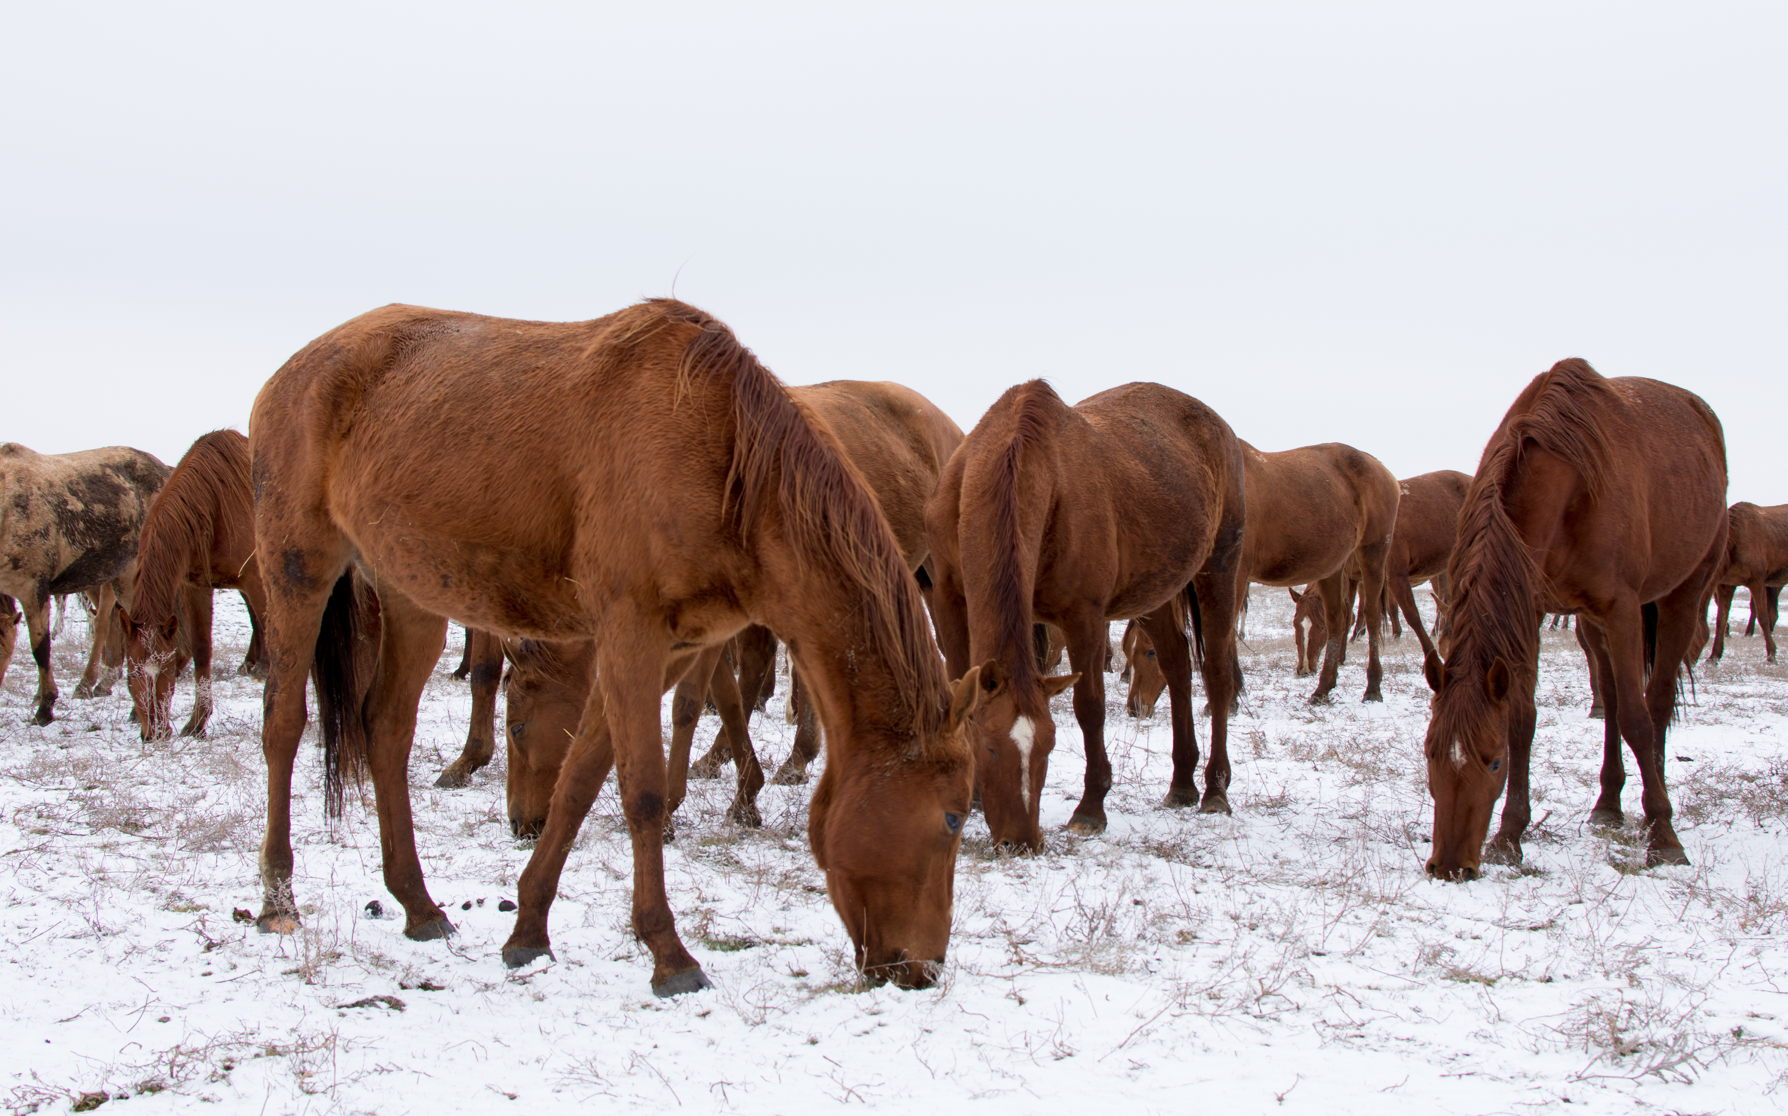 Photo Essay “Russian Horse Farm” by Maria Kislova